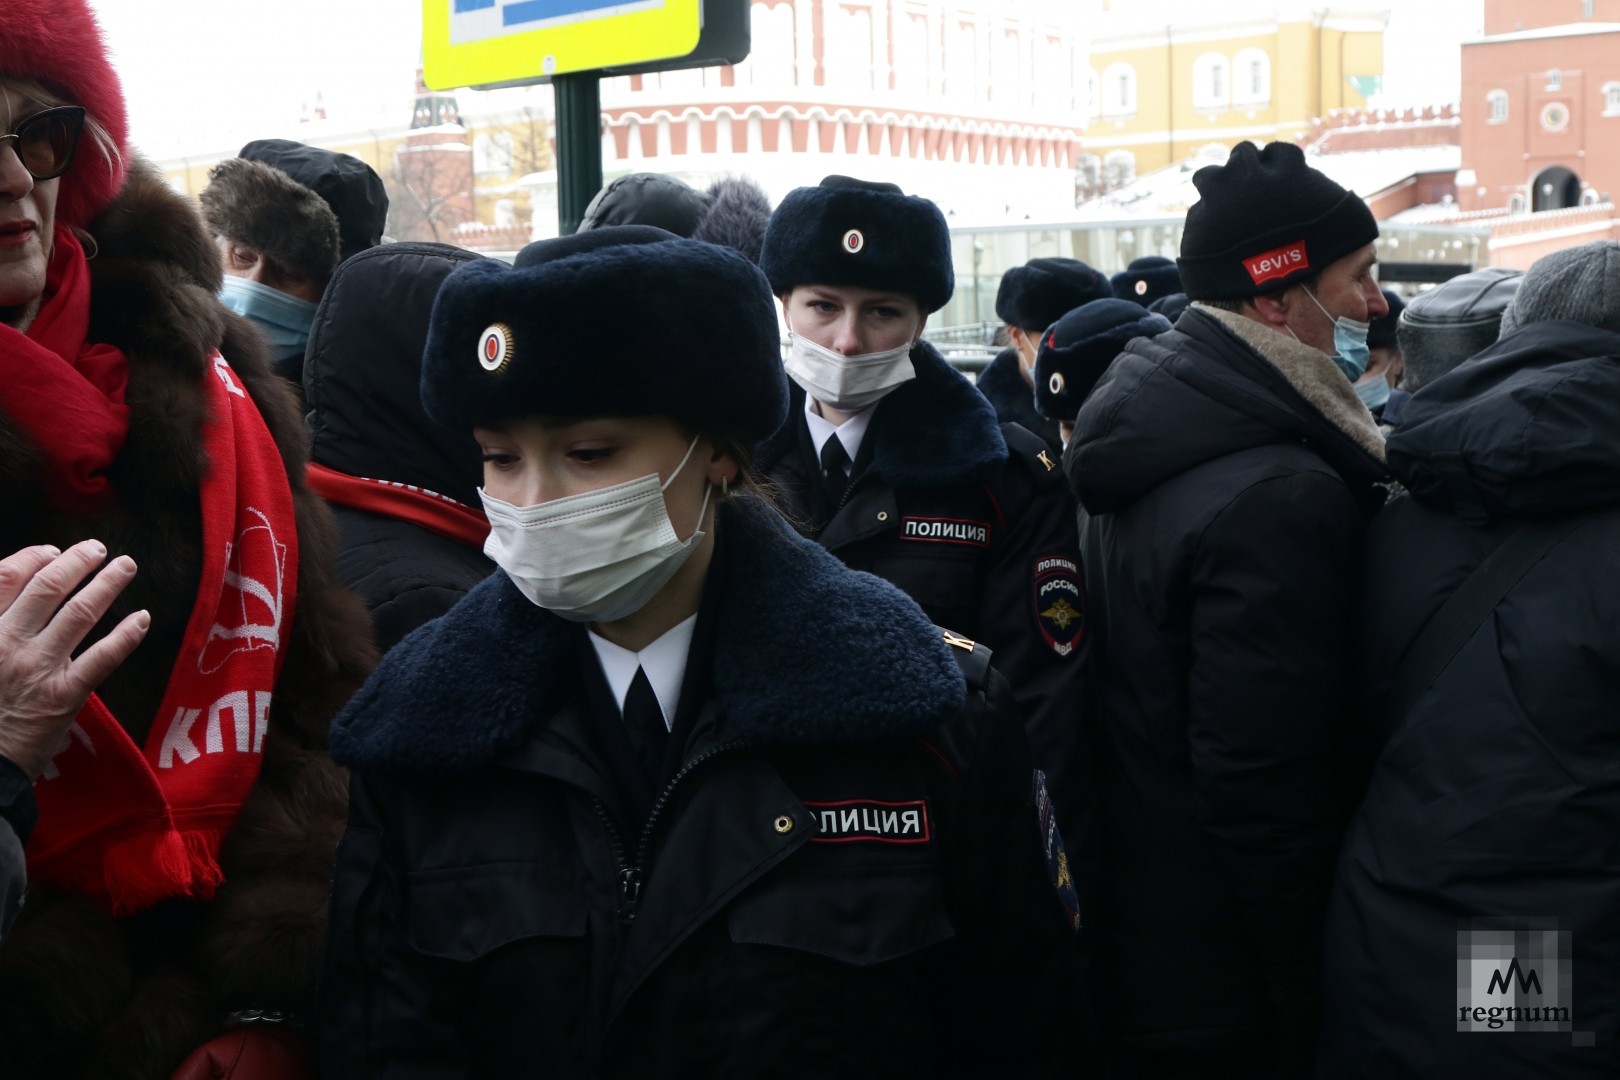 Митинг в москве 23 февраля. Полицейские на митинге в Москве. КПРФ митинг 23 февраля. Девушки полицейские на митинге.